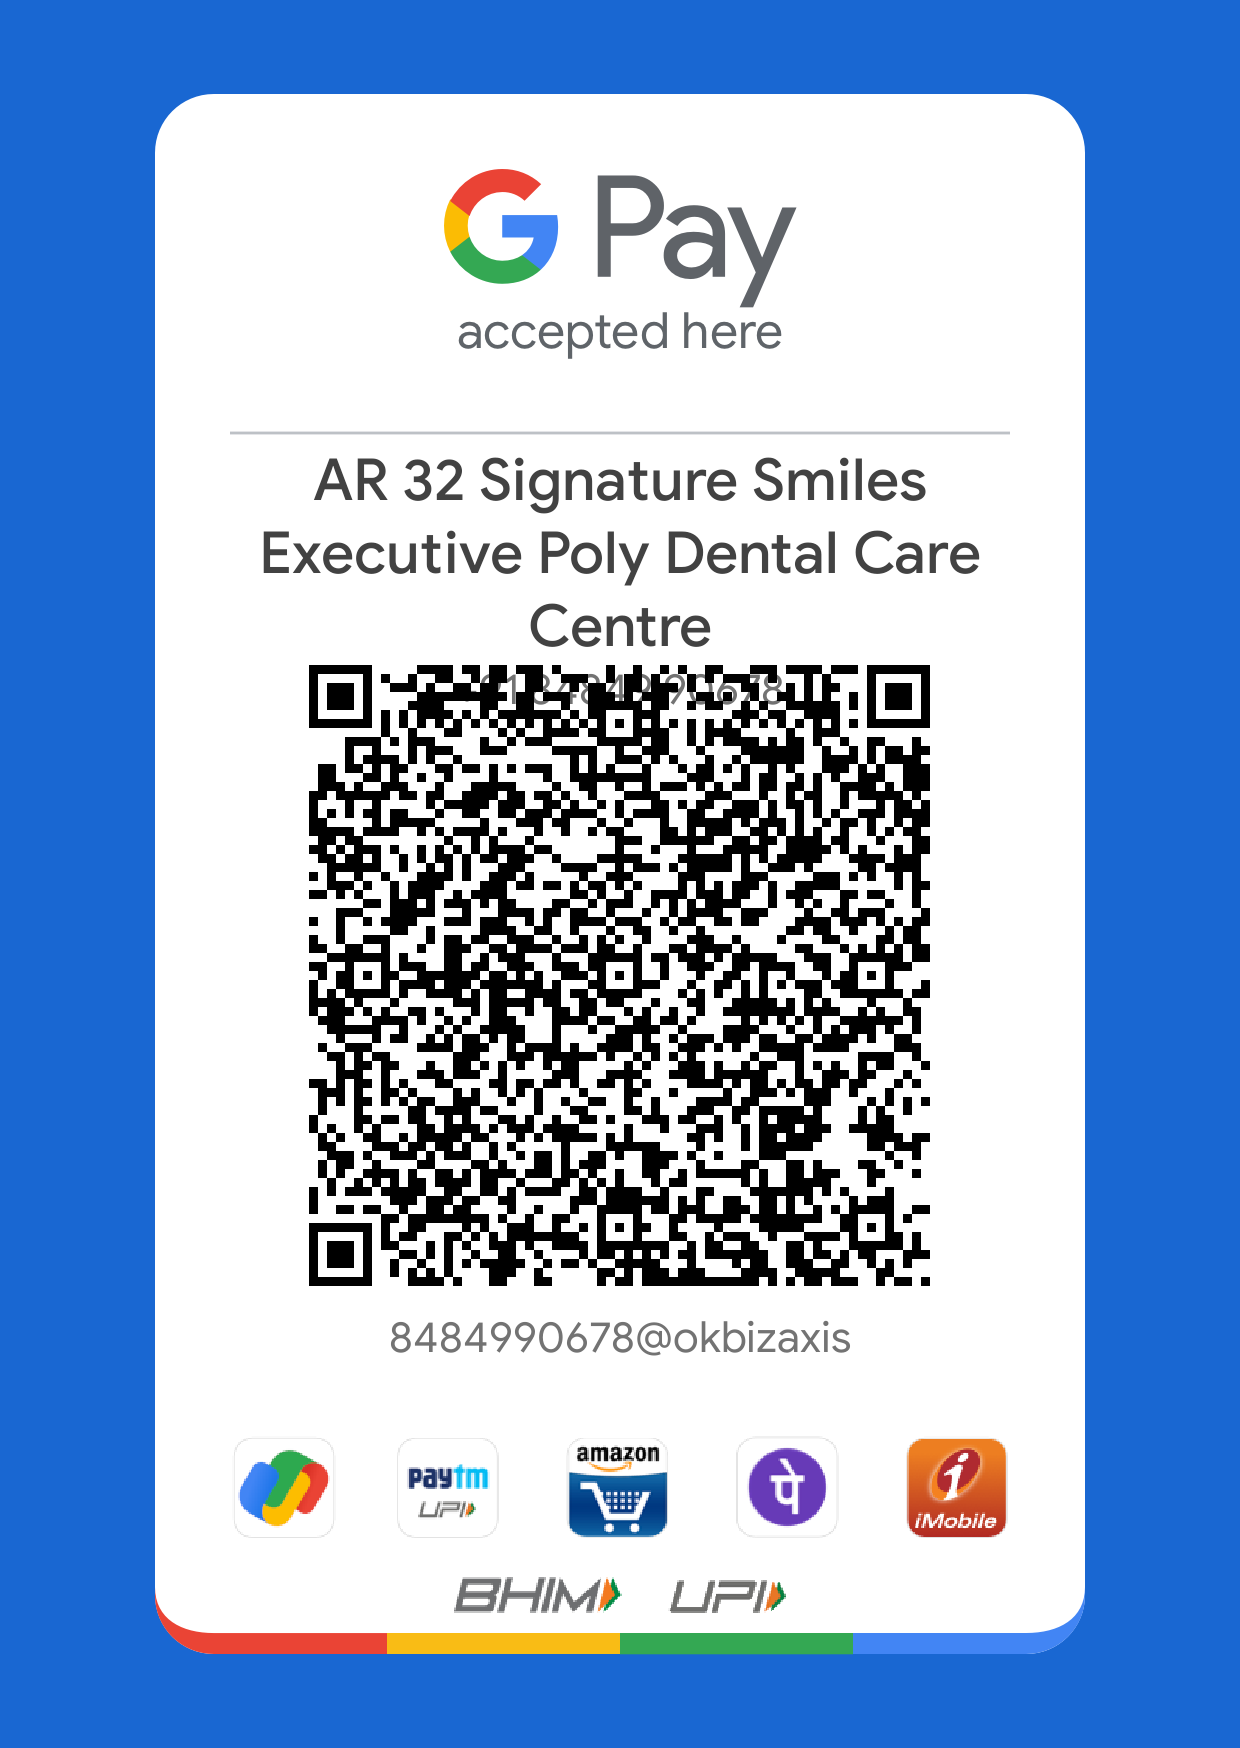 Google Pay QR Code AR 32